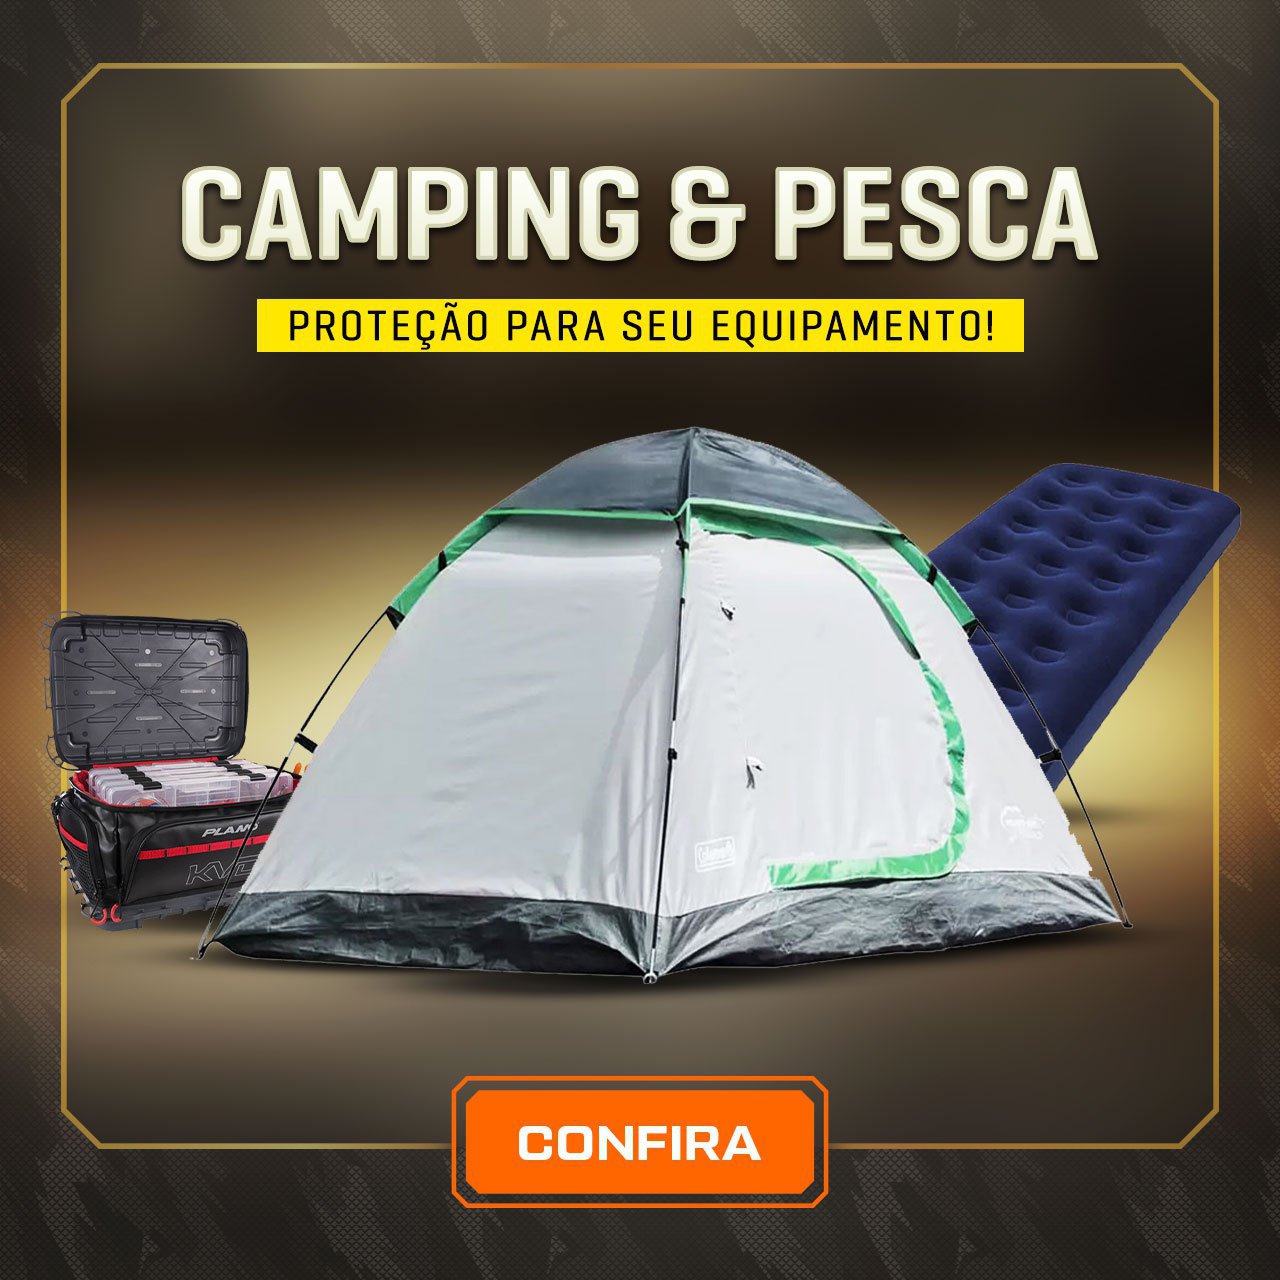 Camping & Pesca - TUDO PARA SUA AVENTURA!